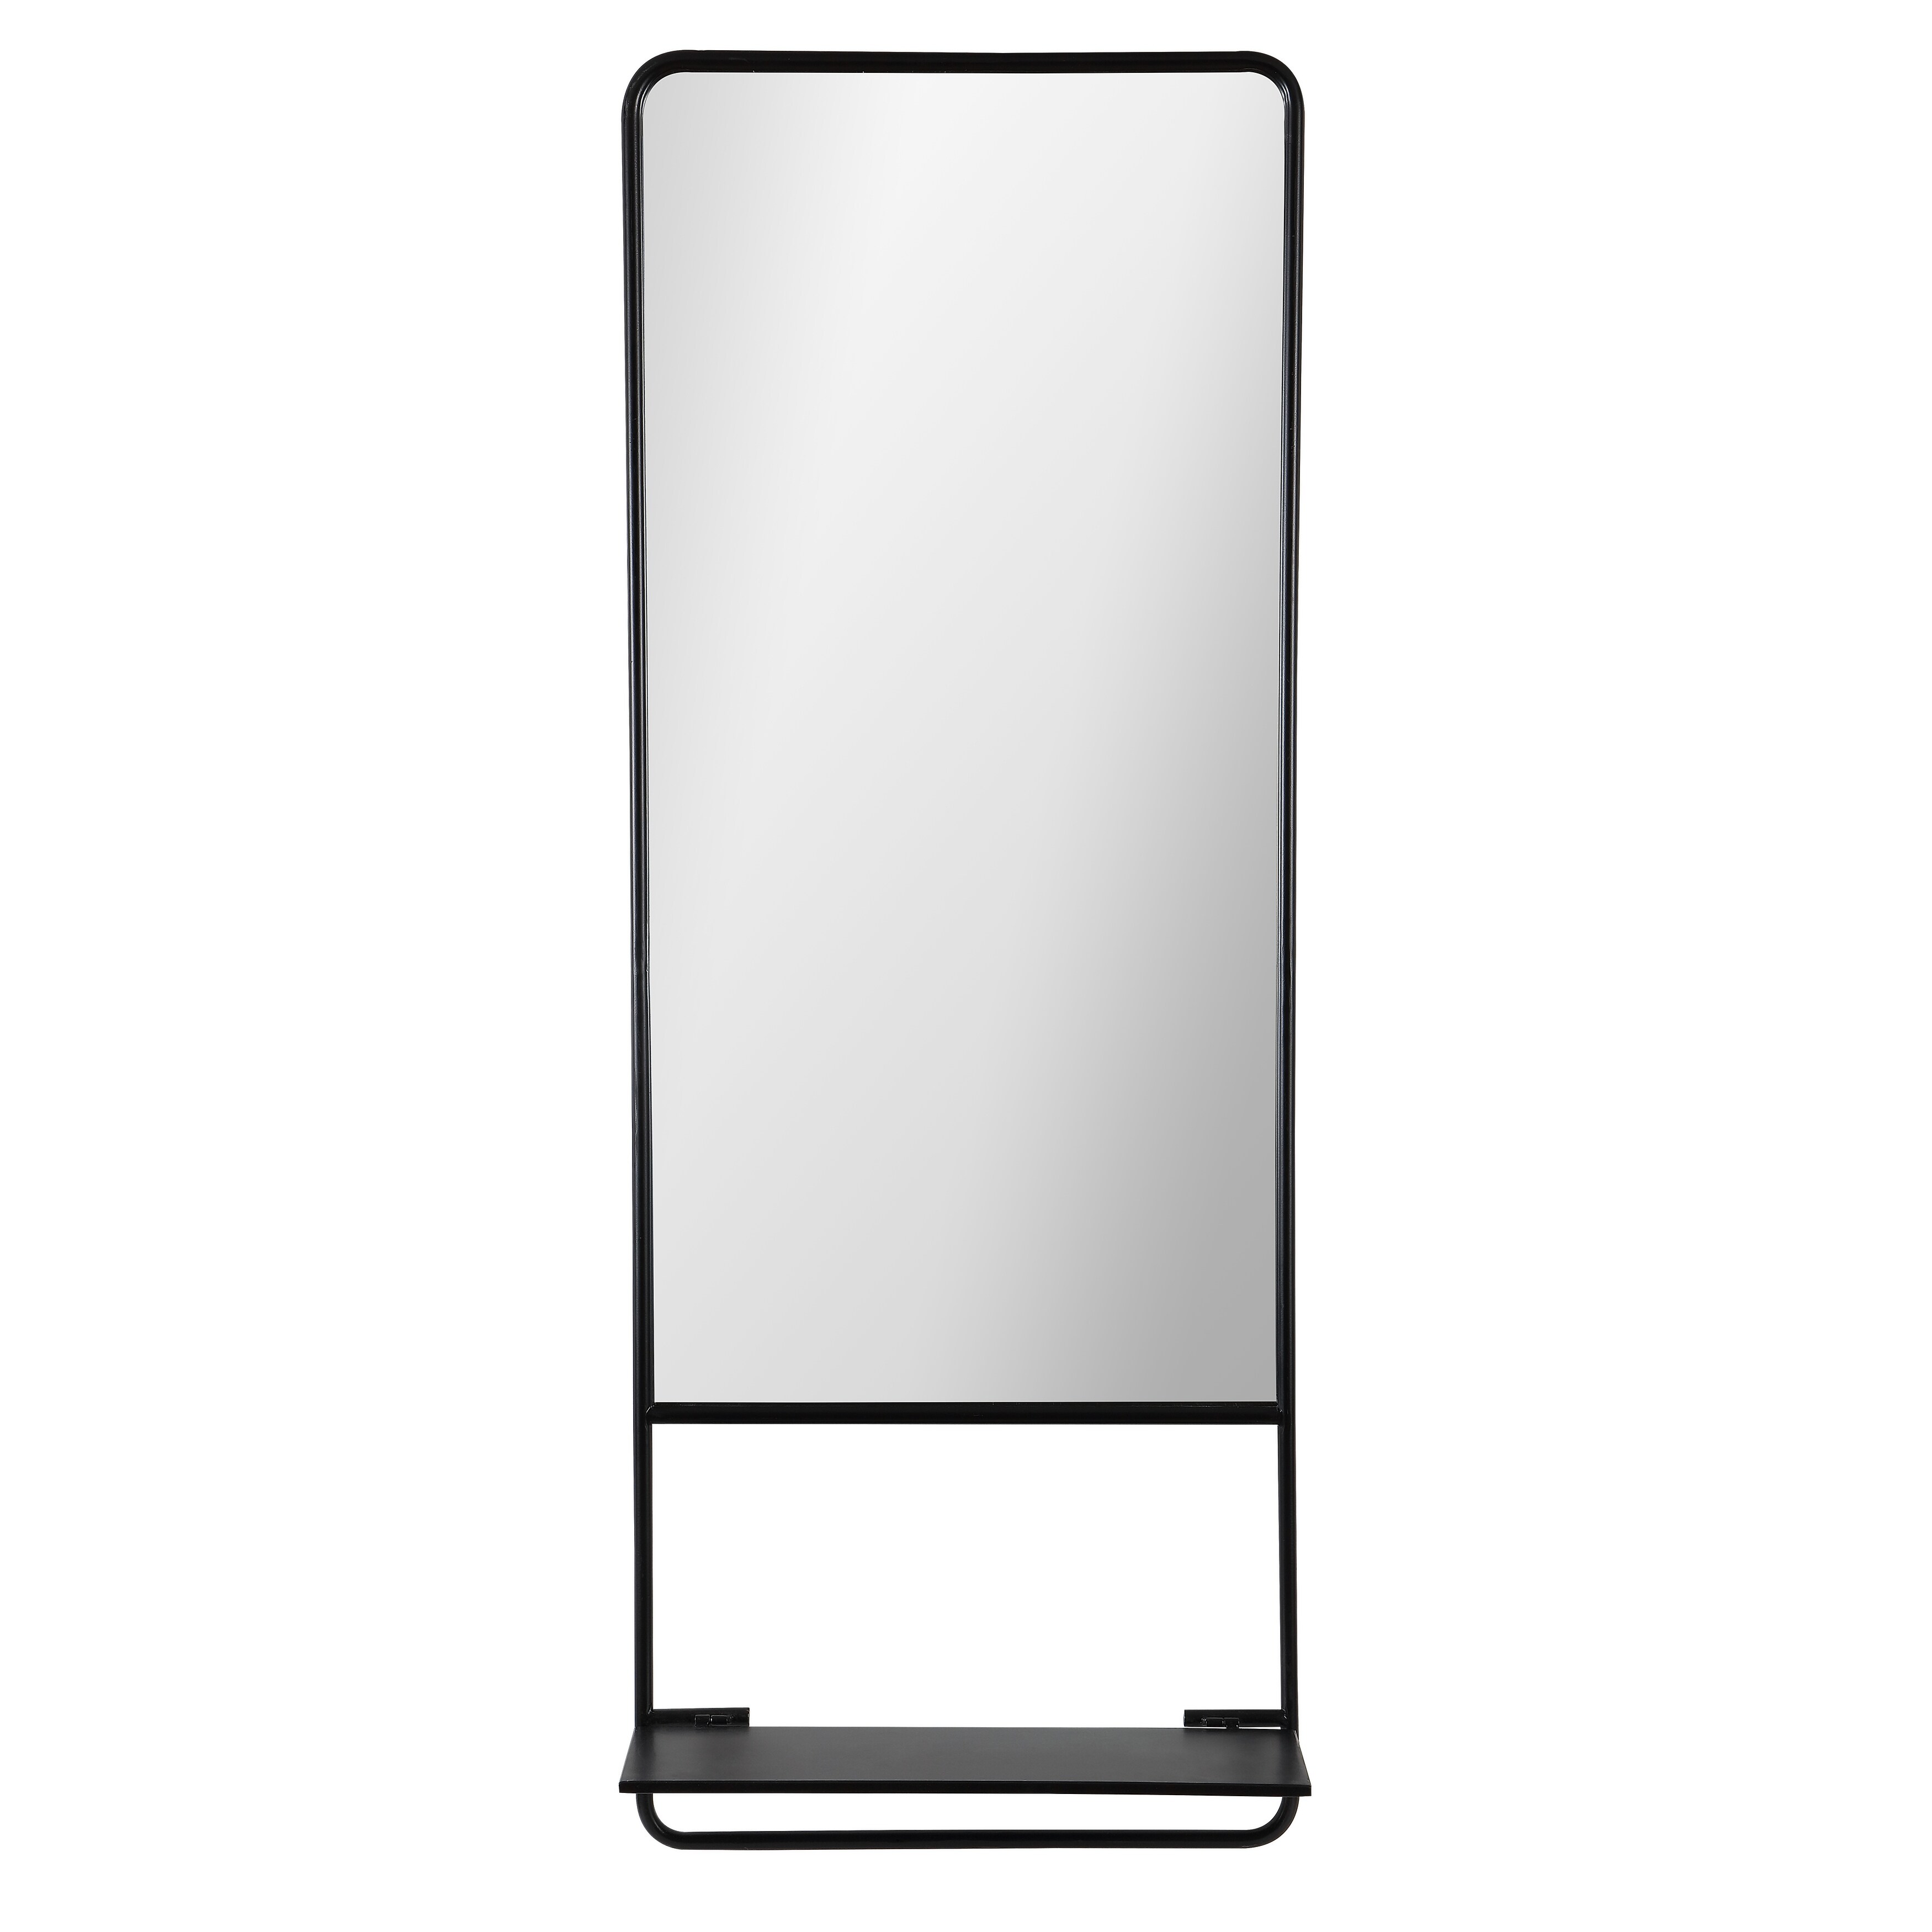 SAFAVIEH Trinsy 22-inch Black Rectangular Wall Mirror with Shelf - 18" x 5" x 48"